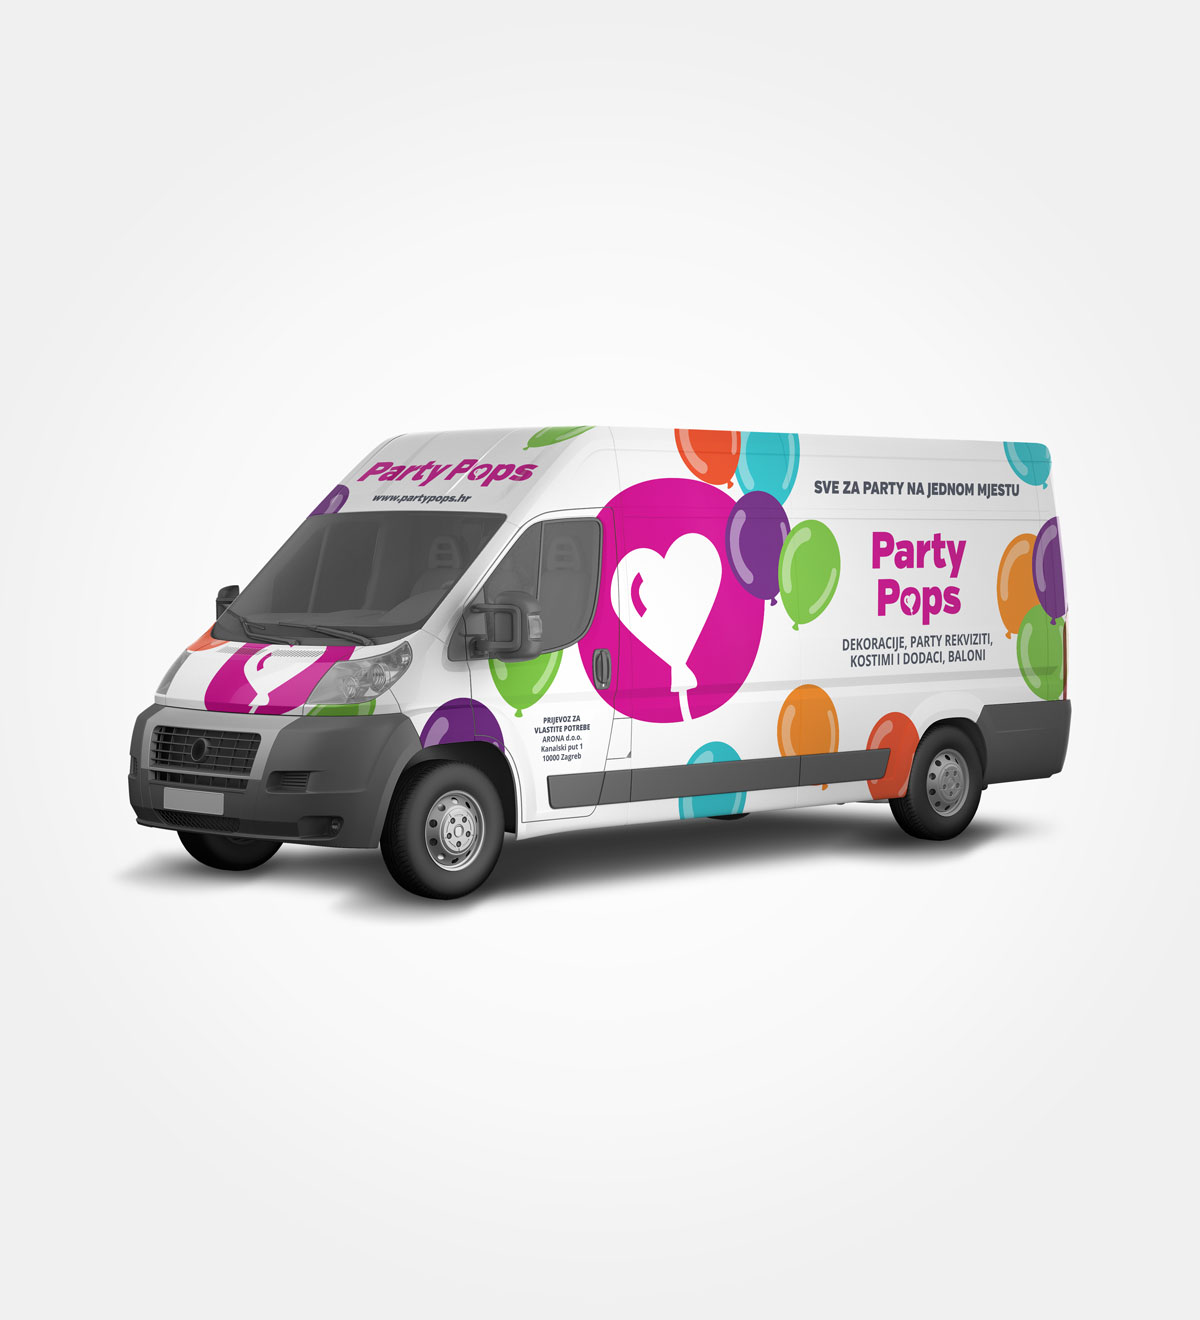 Dizajn oslikavanja vozila za Party Pops. Veseli dizajn kombija u skladu sa veselim klijentima. Dominiraju roze boje i raznobojni baloni.